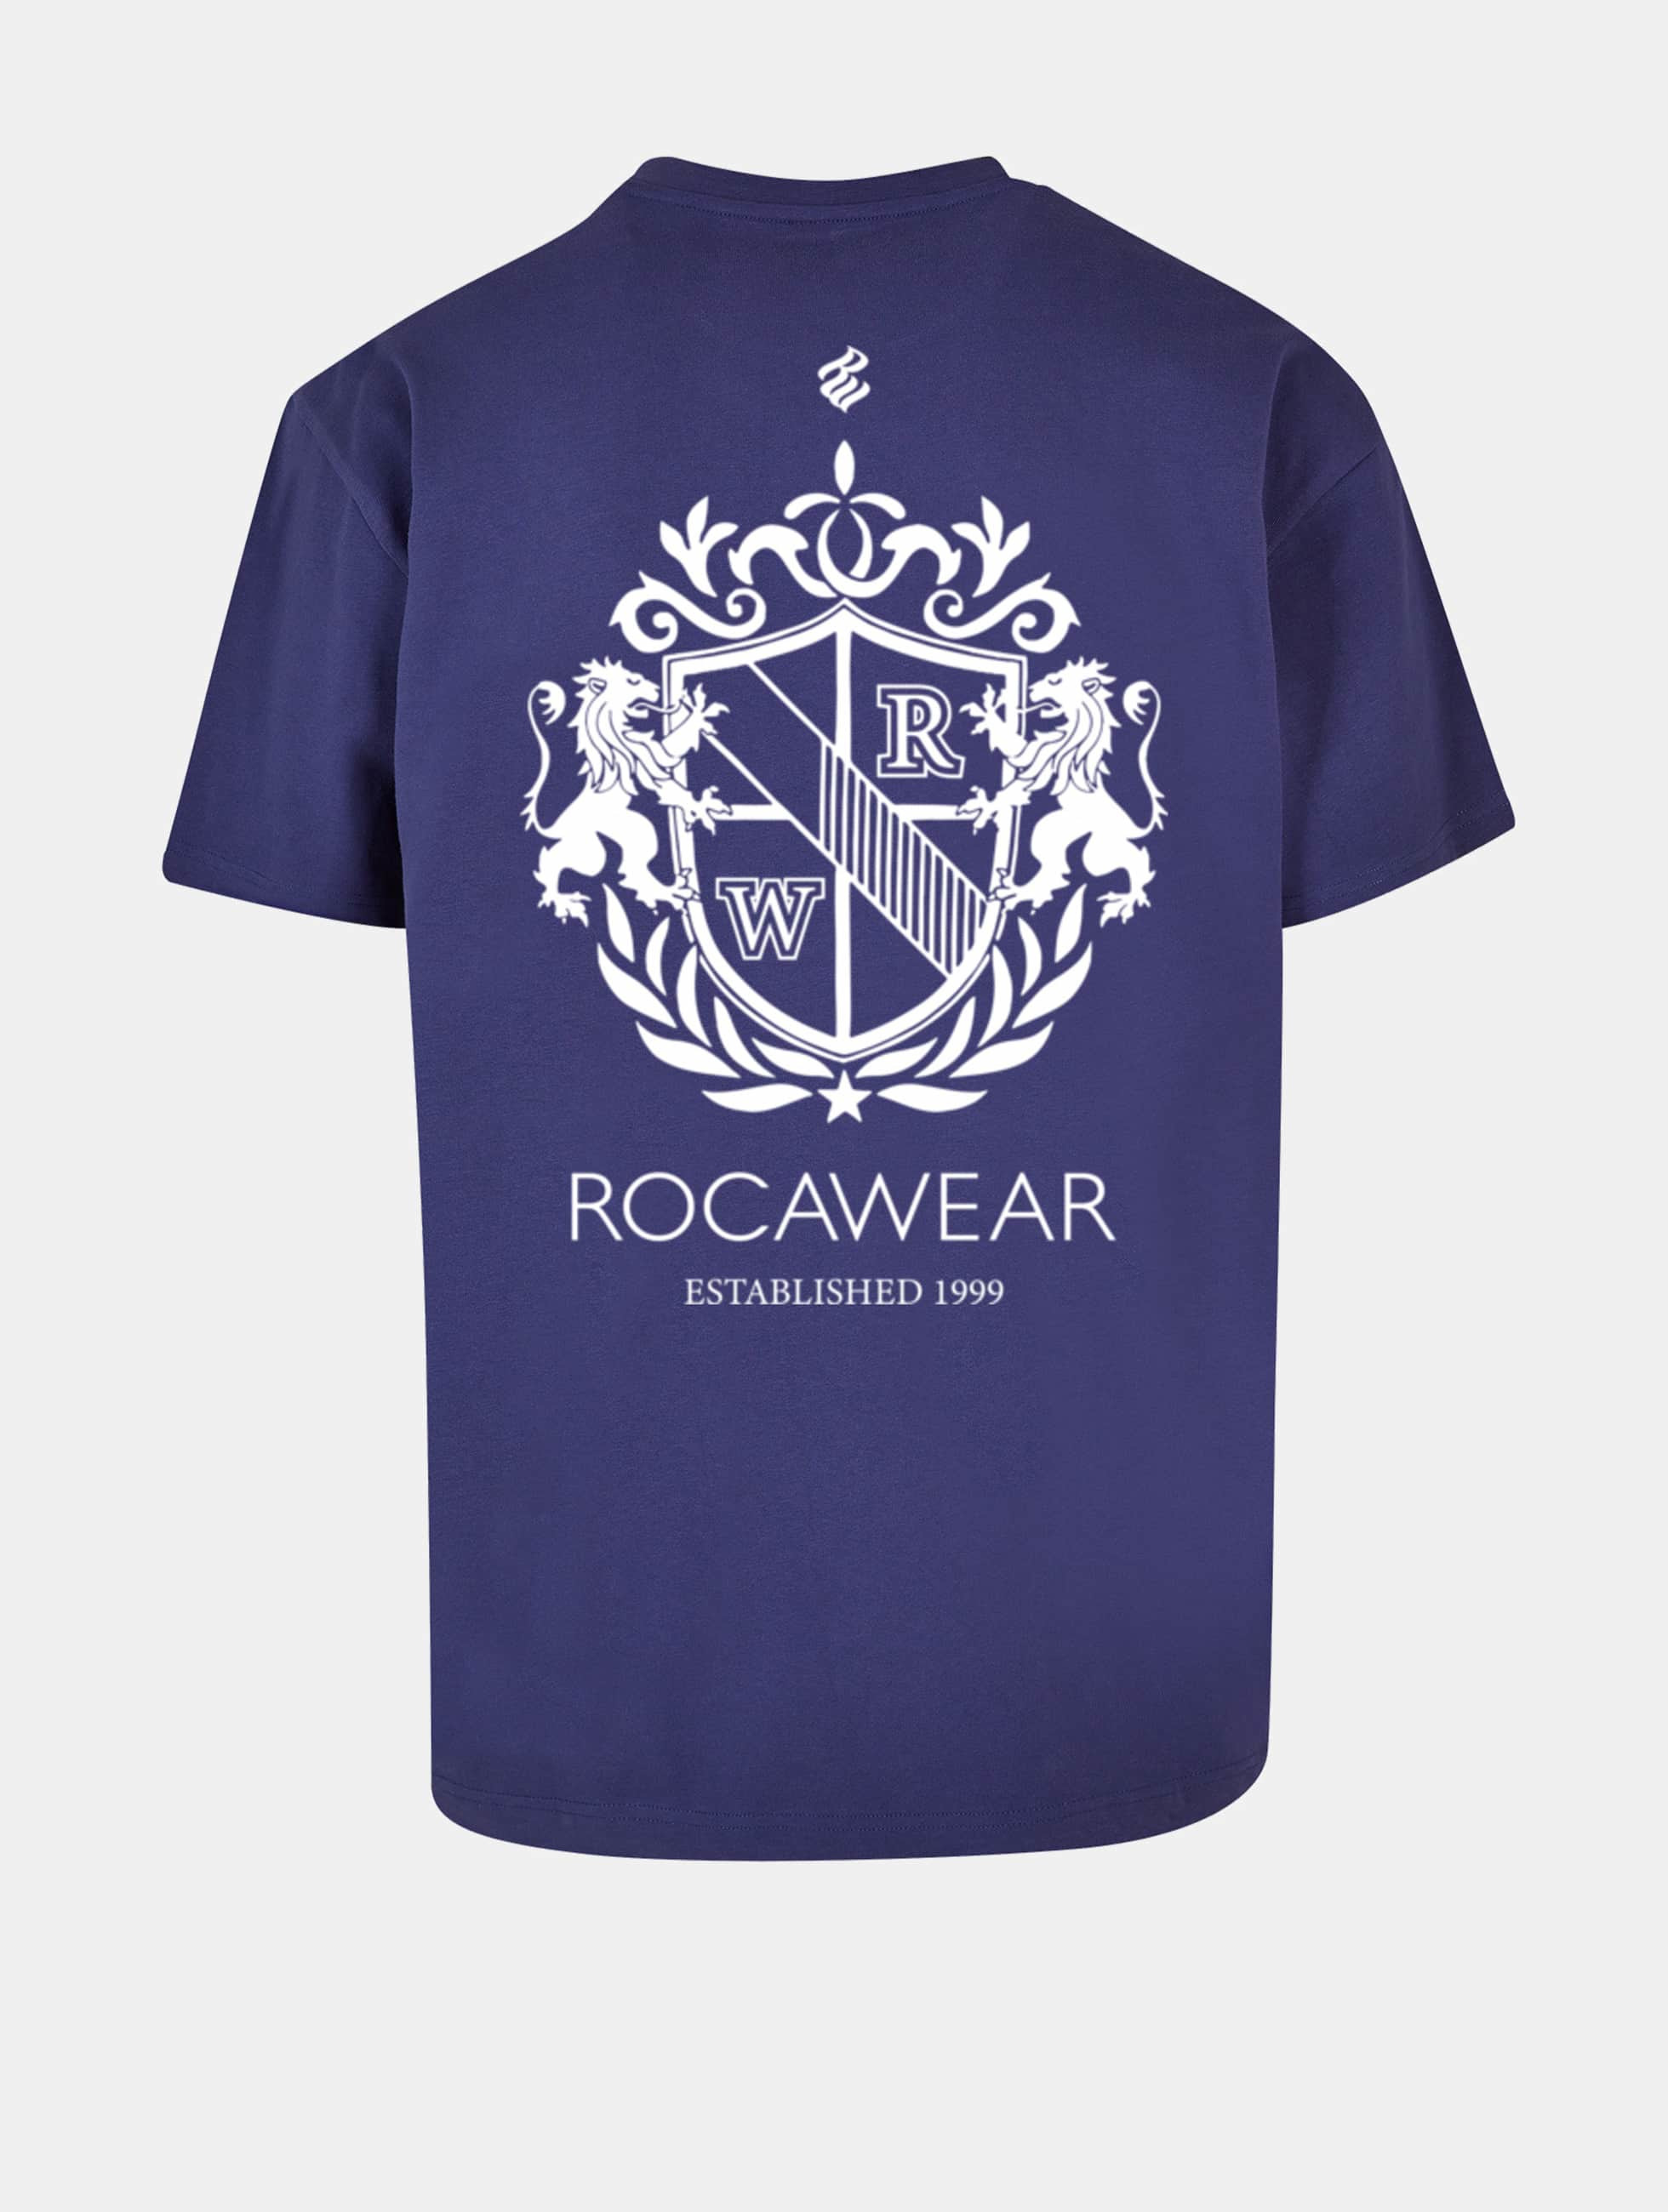 Bild von Rocawear Männer T-Shirt Royal in blau